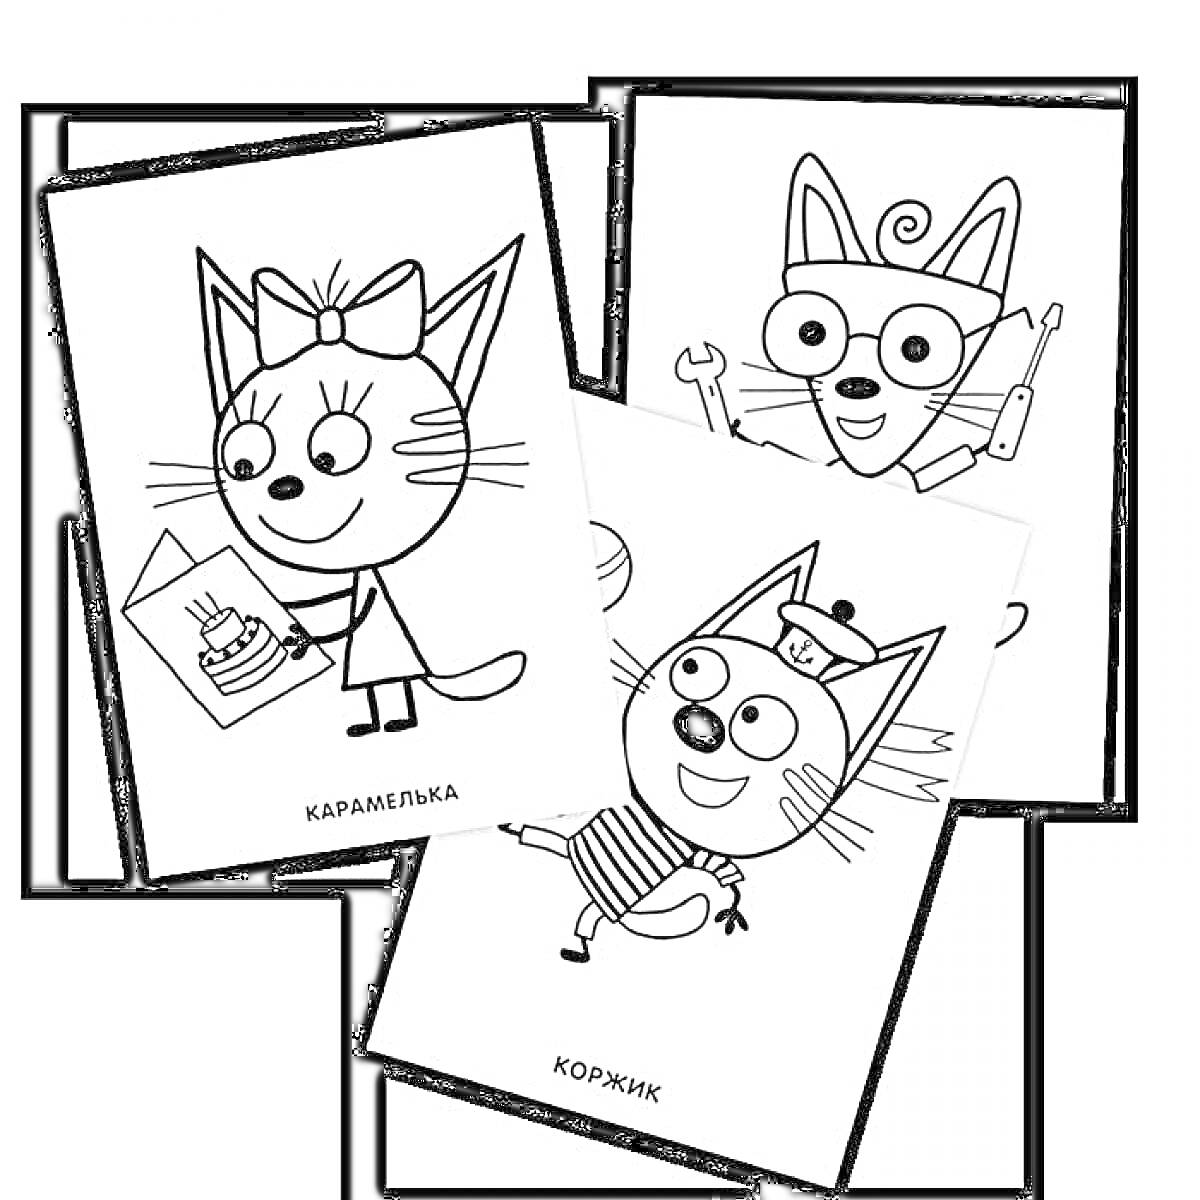 Раскраска Три кота - три кошачьих персонажа, один держит рисунок торта, второй с гайковертом и большими очками, третий в полосатой футболке и с фуражкой, имя Коржик